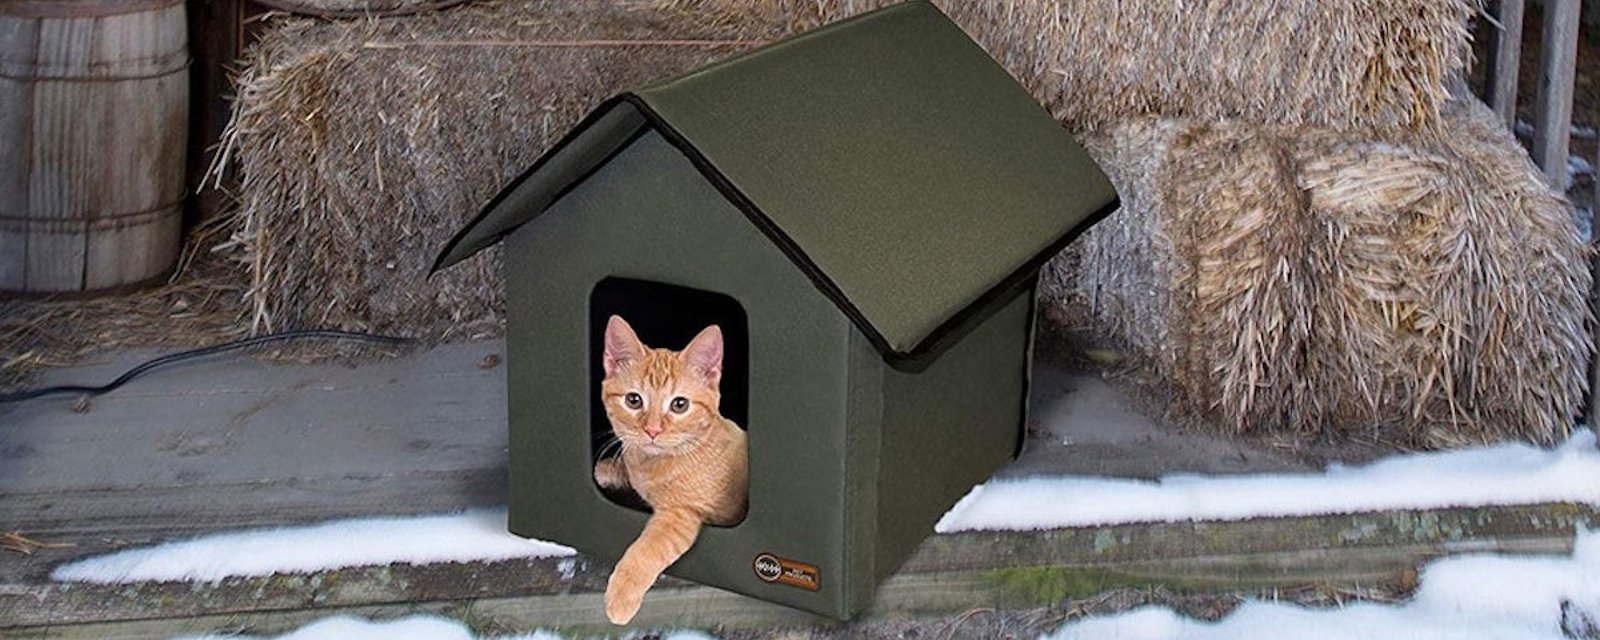 Saviez-vous qu'il est possible d'acheter une maison chauffante pour abriter les chats cet hiver?